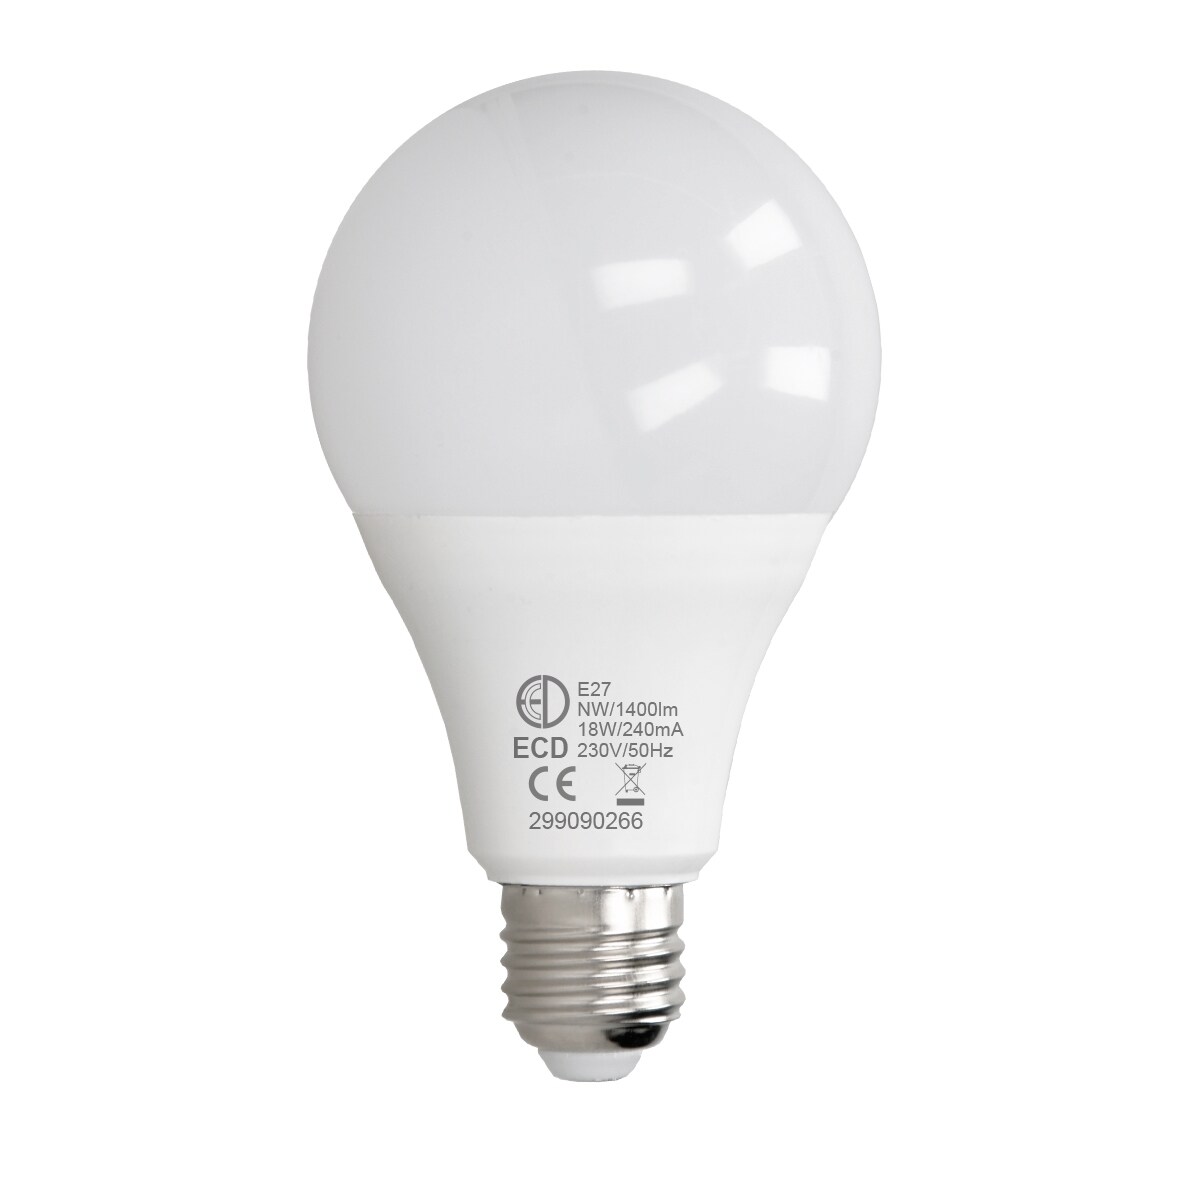 6 x E27 LED pære lampe pærer belysning 18W neutral hvid sæt | Elgiganten